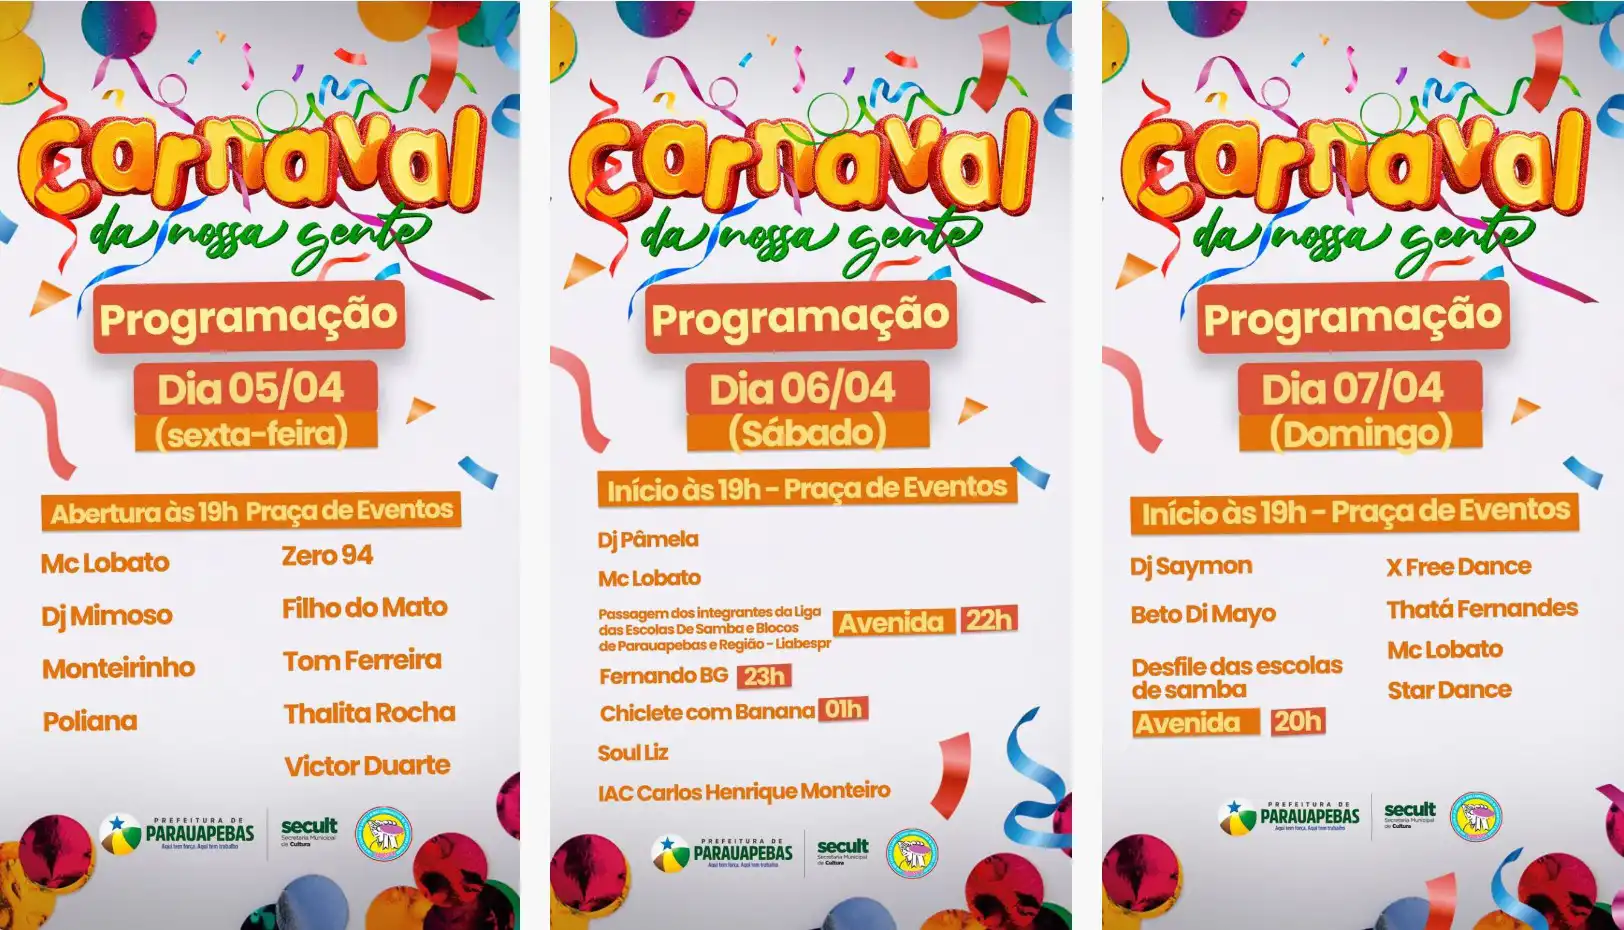 O carnaval de Parauapebas é organizado pela Liga das Escolas de Samba e Blocos Carnavalescos de Parauapebas e Região (Liabespr)